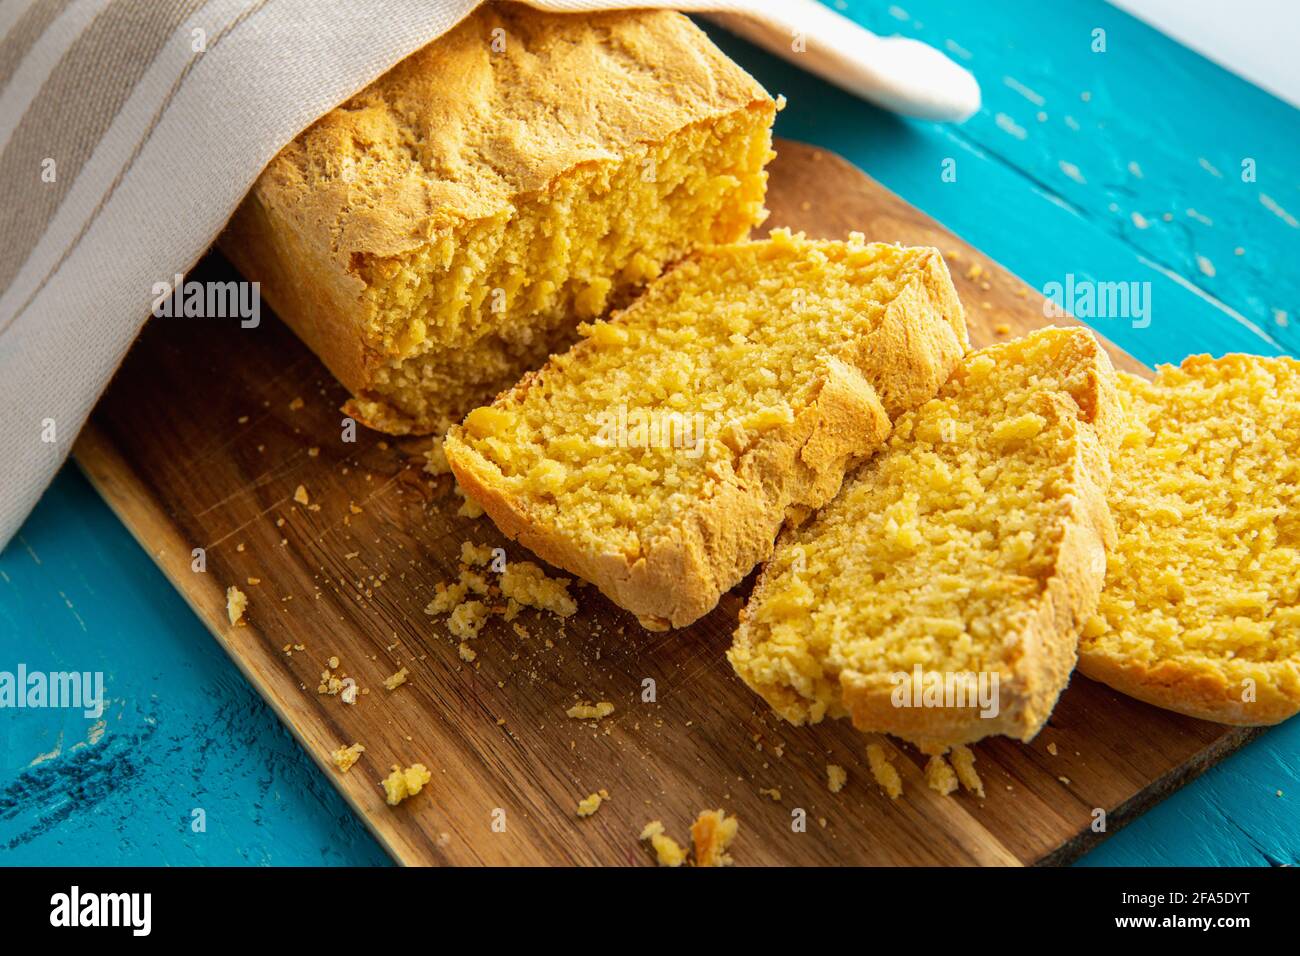 Maisbrot ist Brot mit Maismehl, Maismehl. Schöner hausgemachter, gelber Maisbrot-Laib unter einem Baumwolltuch. Blauer Holzhintergrund. Stockfoto